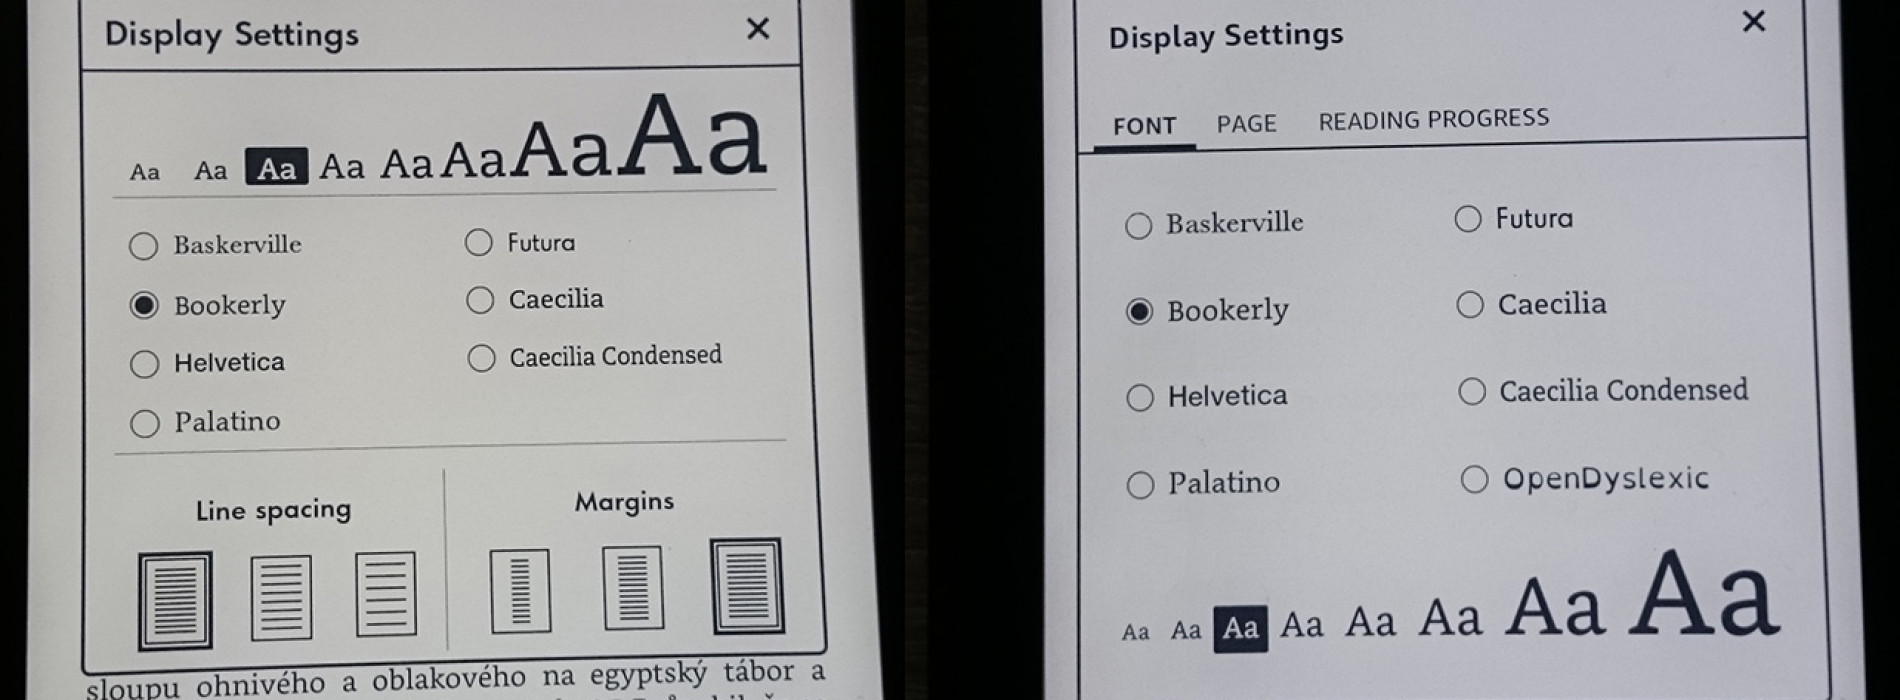 Nový vzhled uživatelského rozhraní pro Amazon Kindle 6 Touch, Kindle Paperwhite 2 a 3 a Kindle Voyage ve fw 5.7.2